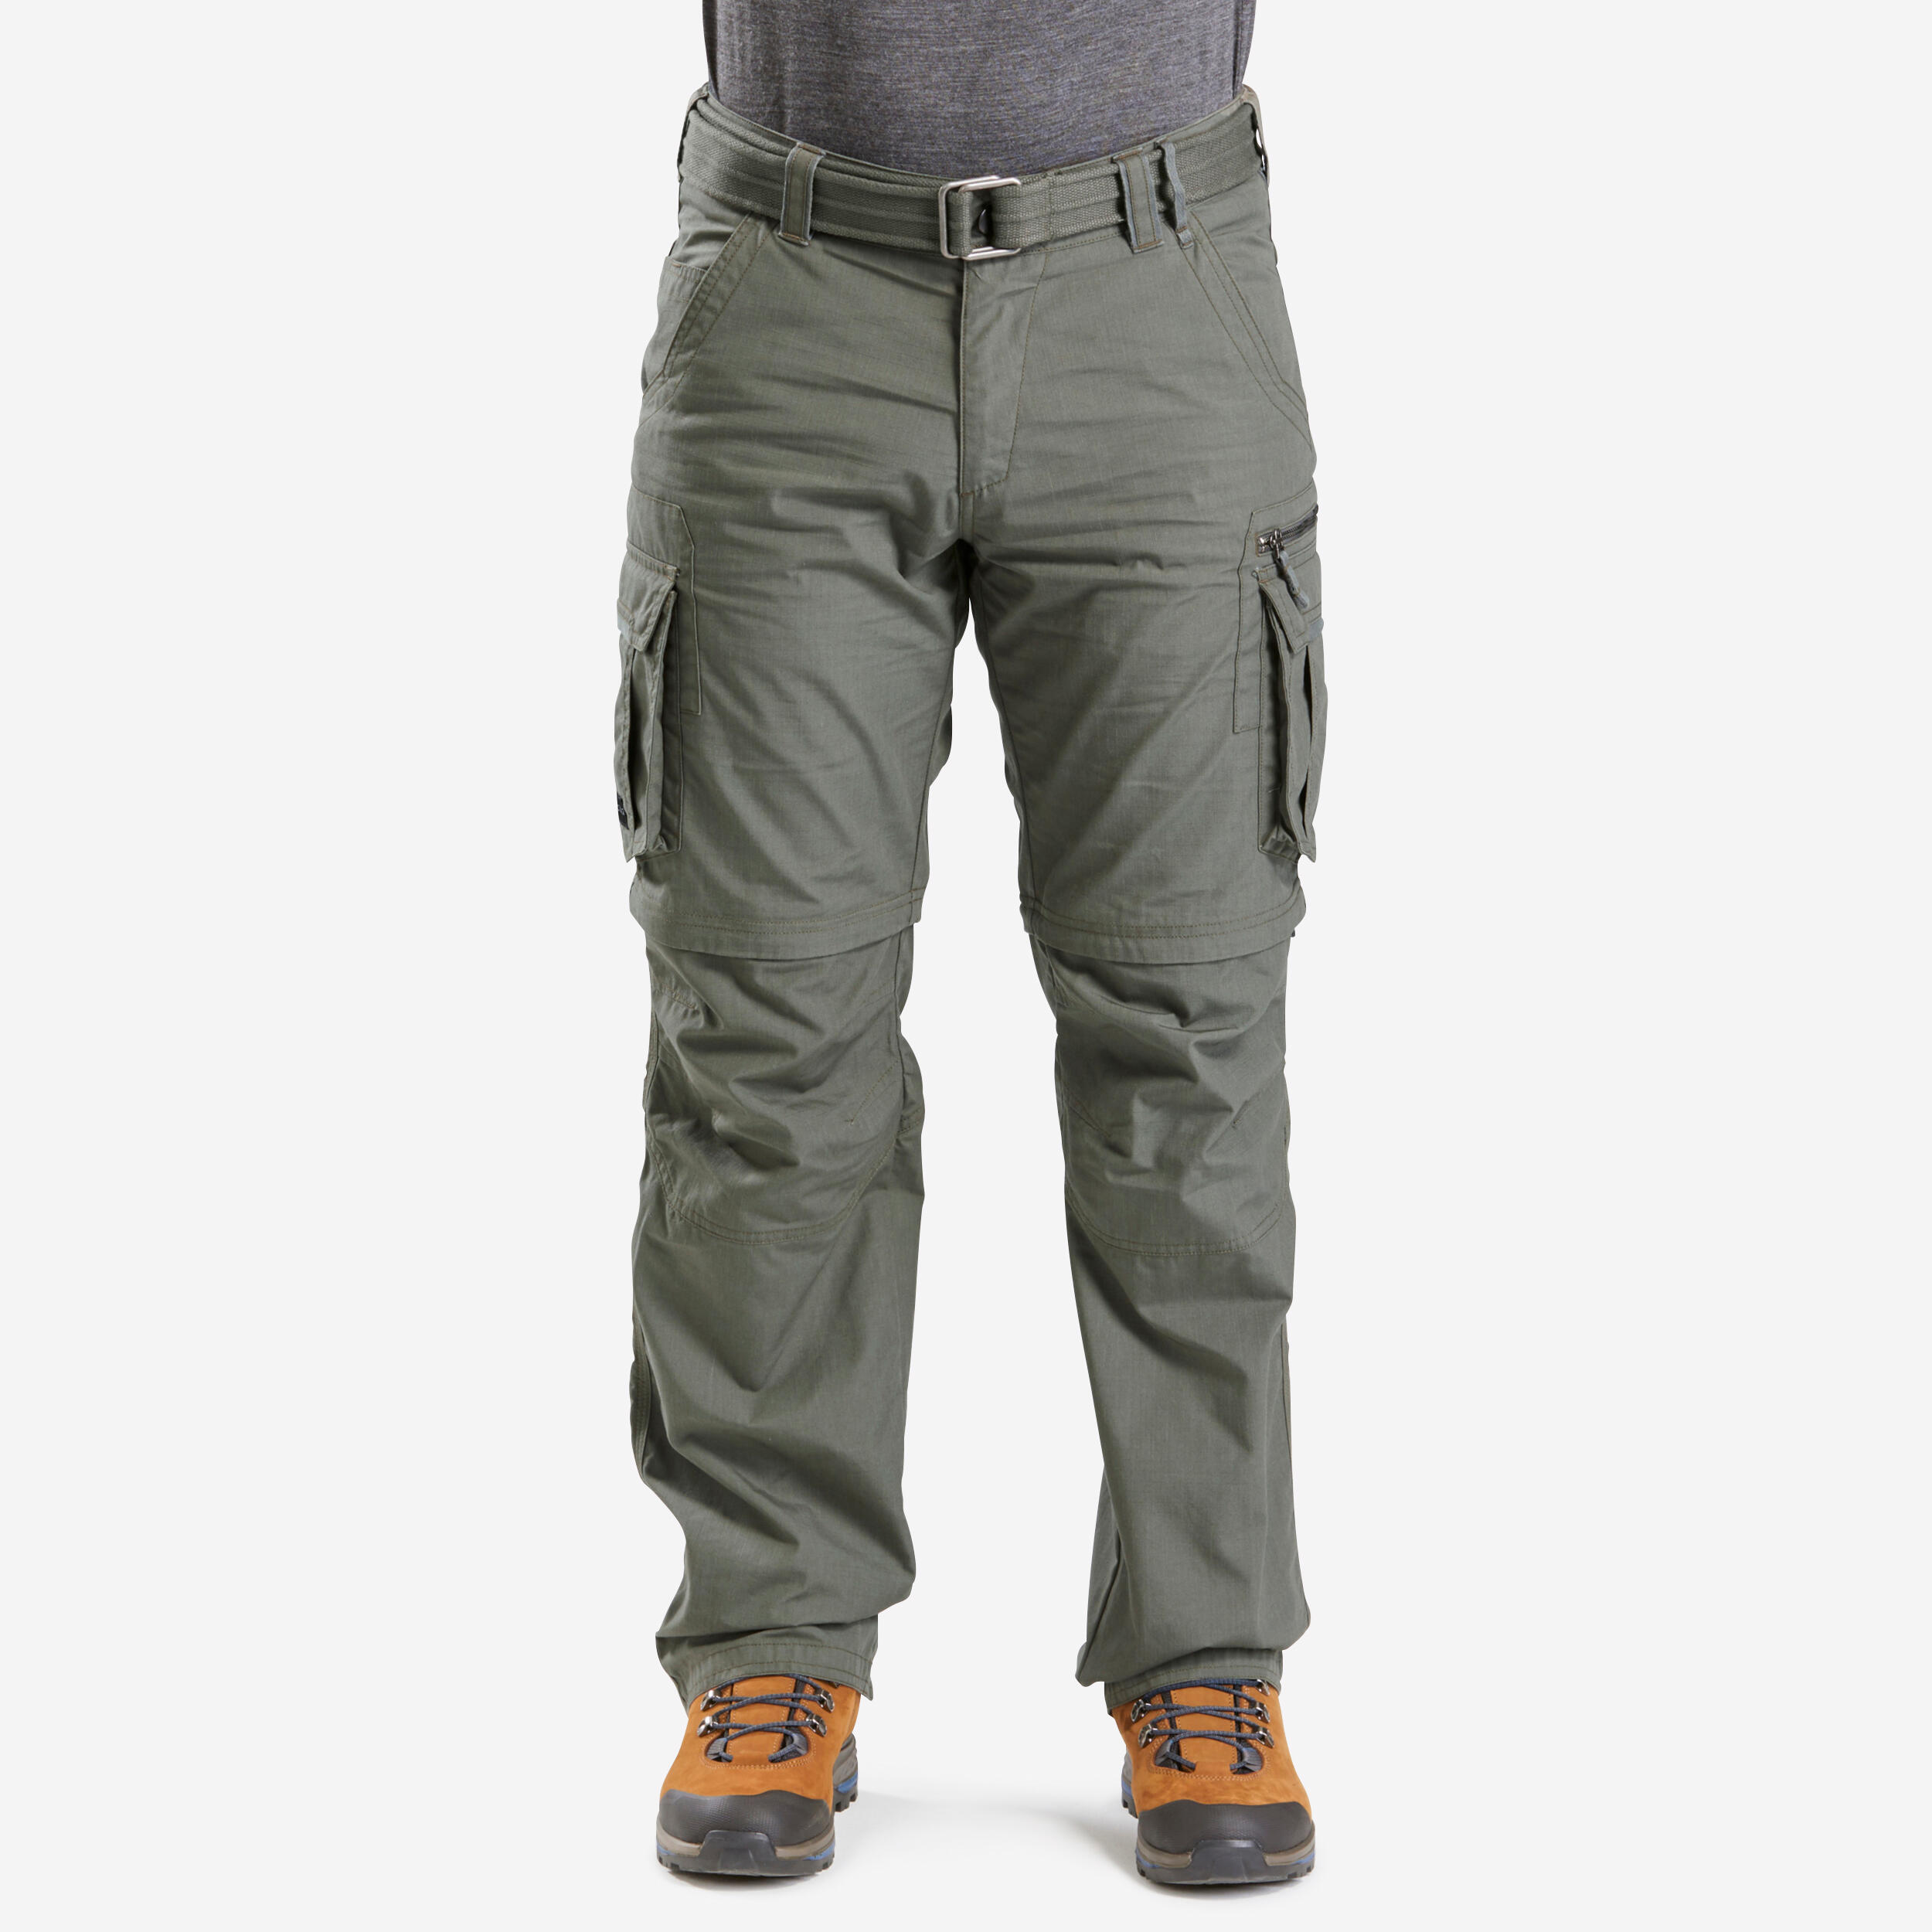 Men's Travel Trekking Zip-Off Cargo Trousers - Travel 100 Zip-Off - khaki 1/15